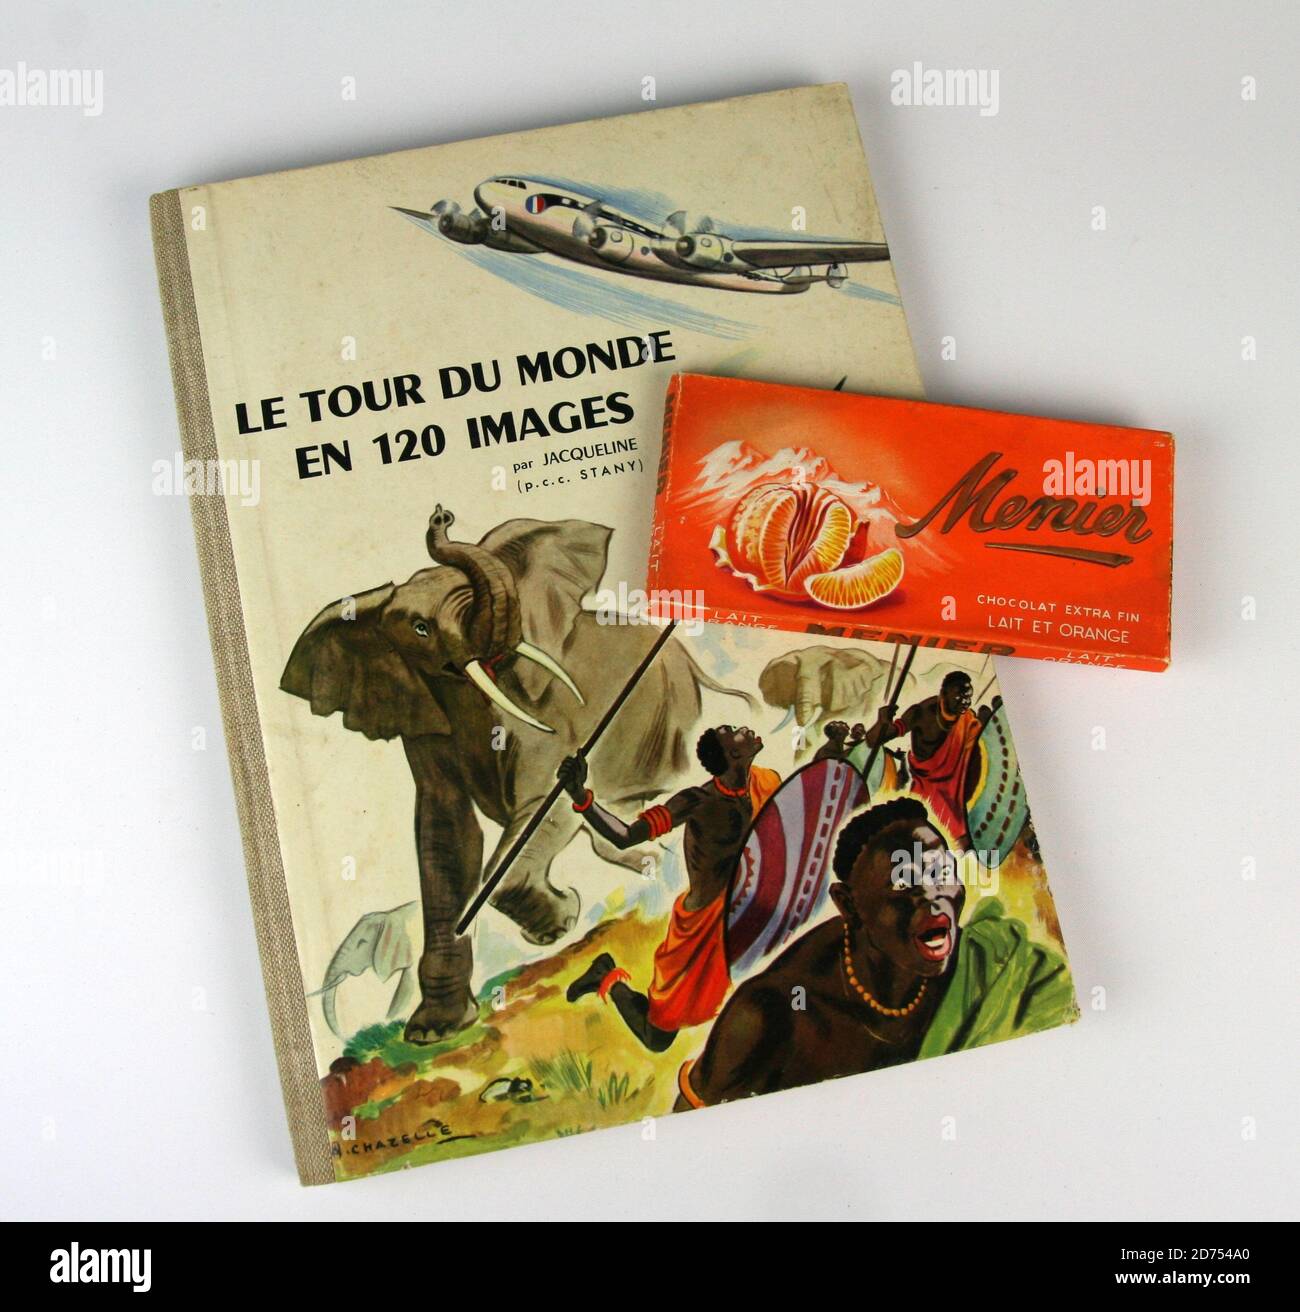 Collecteur d image et tablette de chocolat Menier vers 1955 Stock Photo